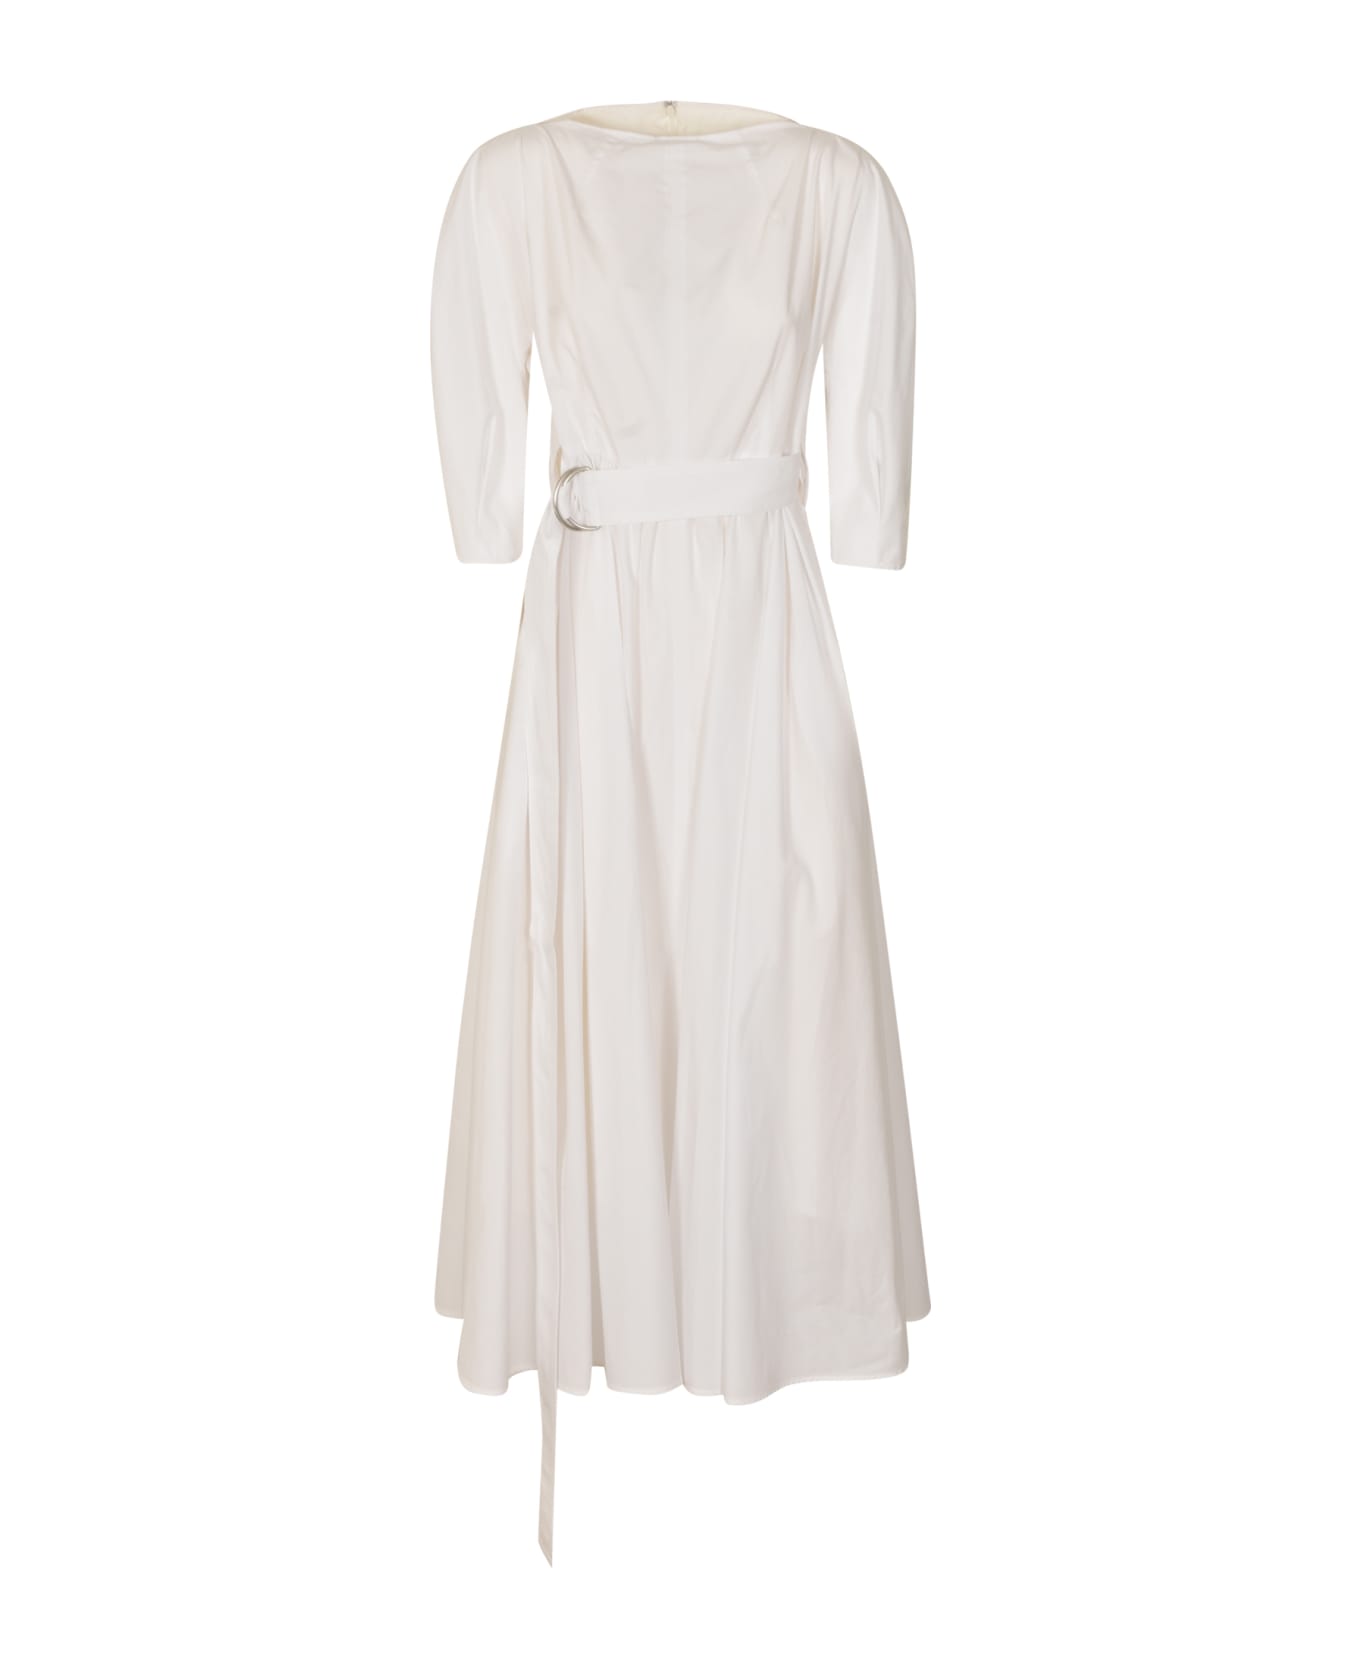 Yohji Yamamoto Belted Waist Rear Zip Flare Dress - Off White